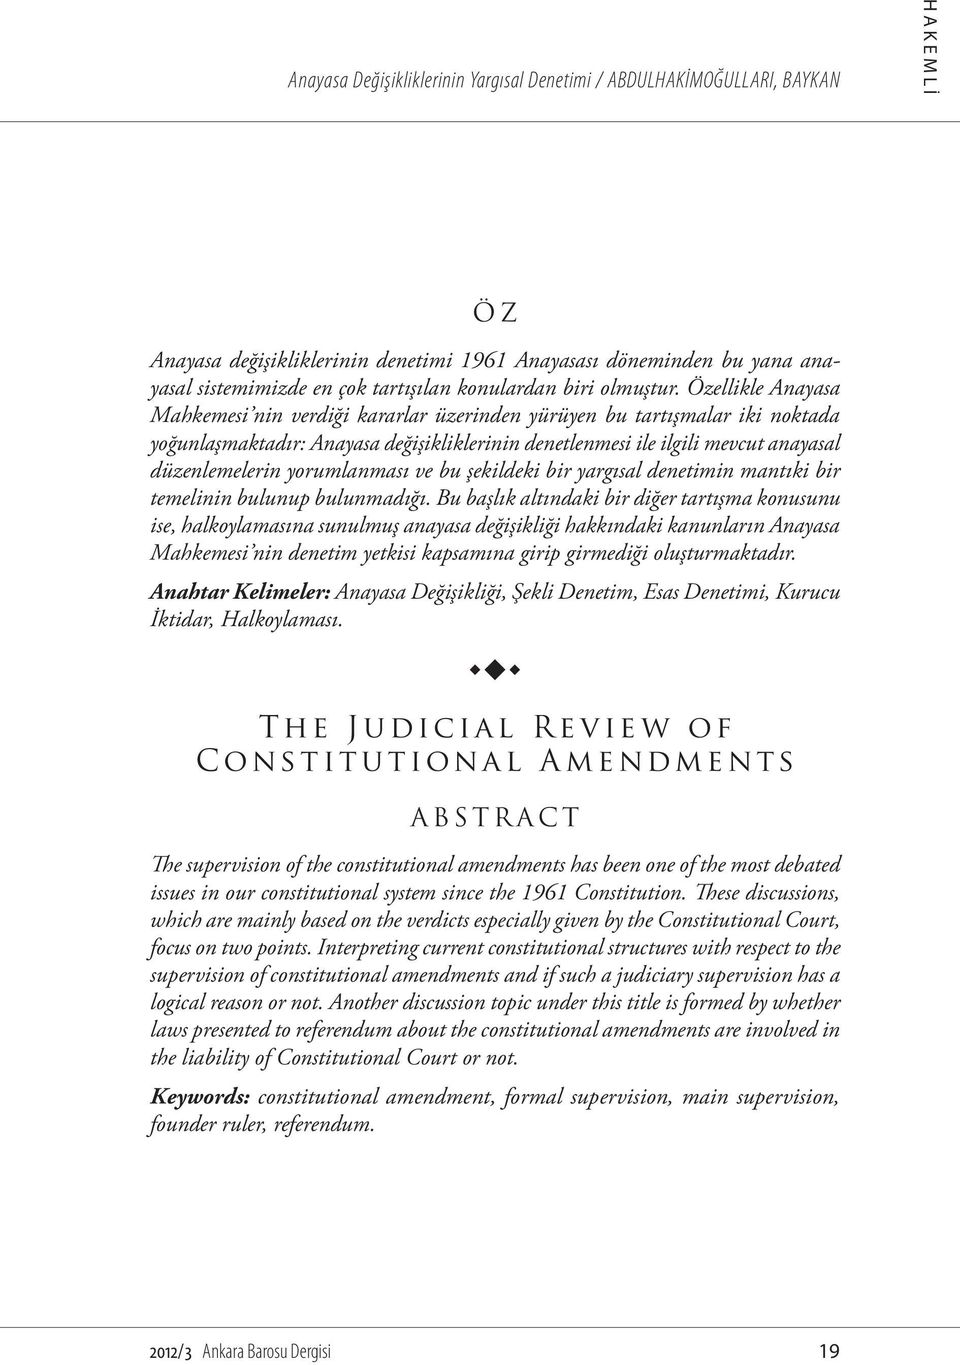 Özellikle Anayasa Mahkemesi nin verdiği kararlar üzerinden yürüyen bu tartışmalar iki noktada yoğunlaşmaktadır: Anayasa değişikliklerinin denetlenmesi ile ilgili mevcut anayasal düzenlemelerin